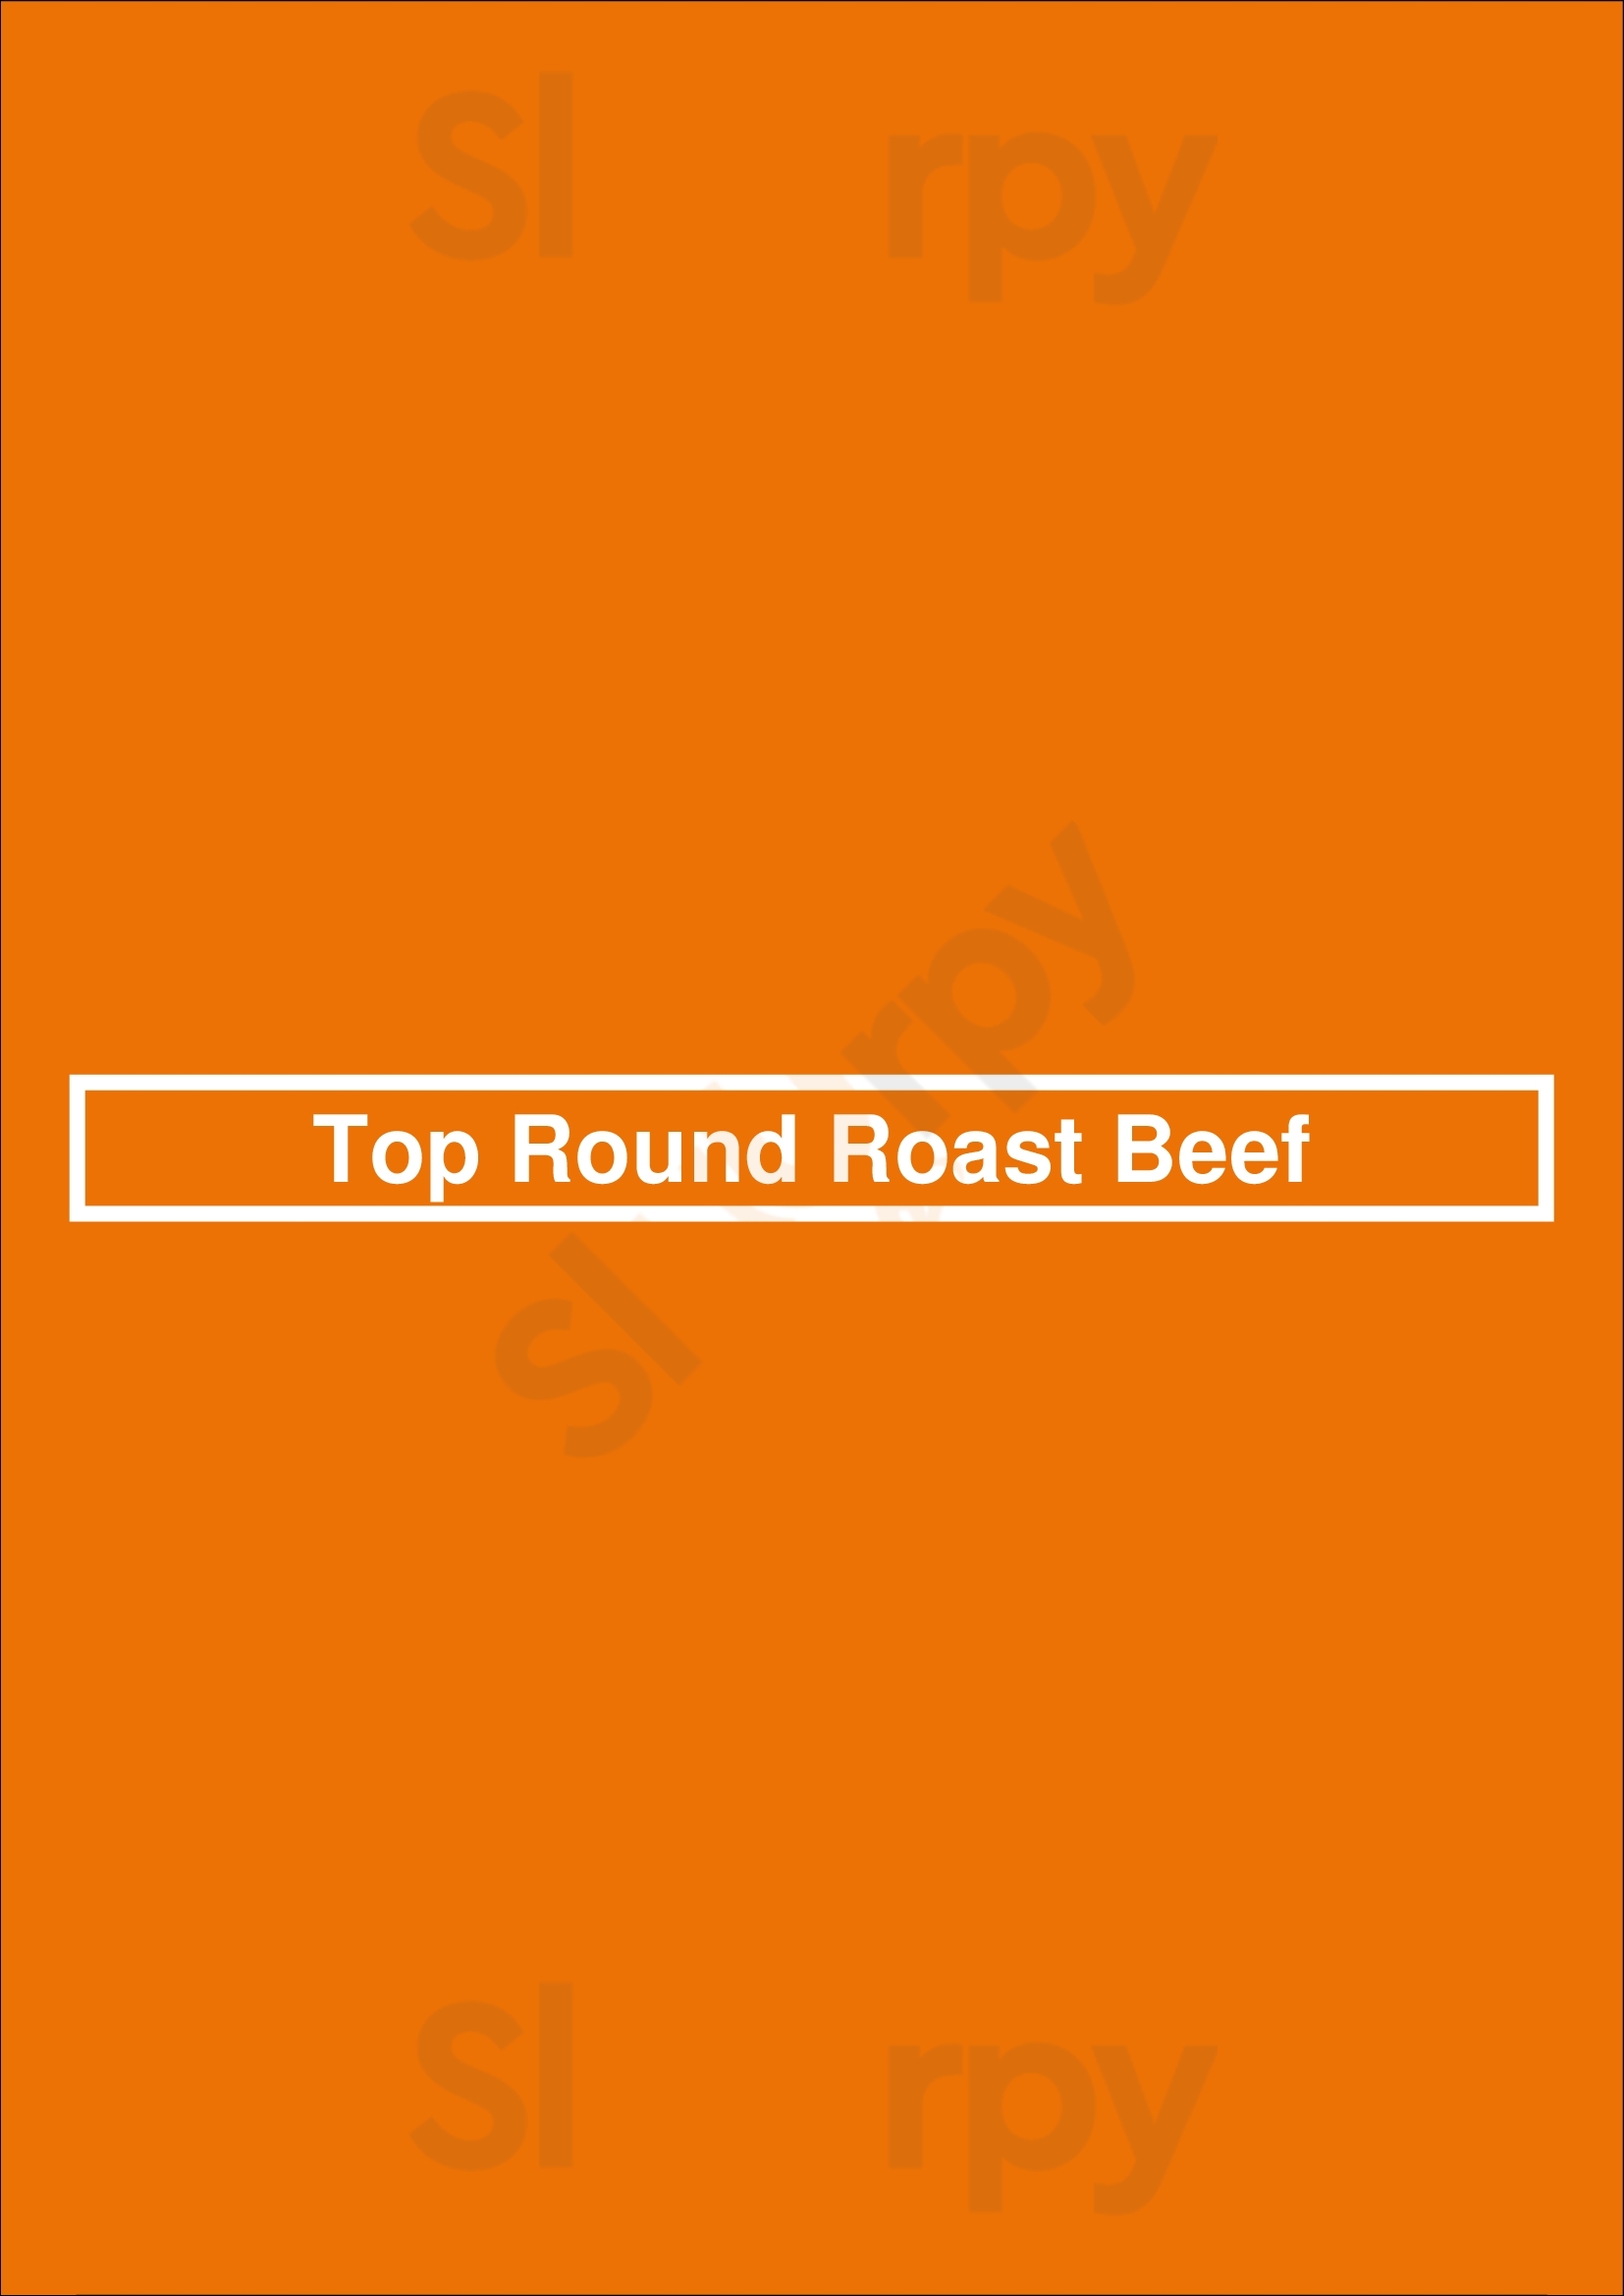 Top Round Roast Beef Los Angeles Menu - 1